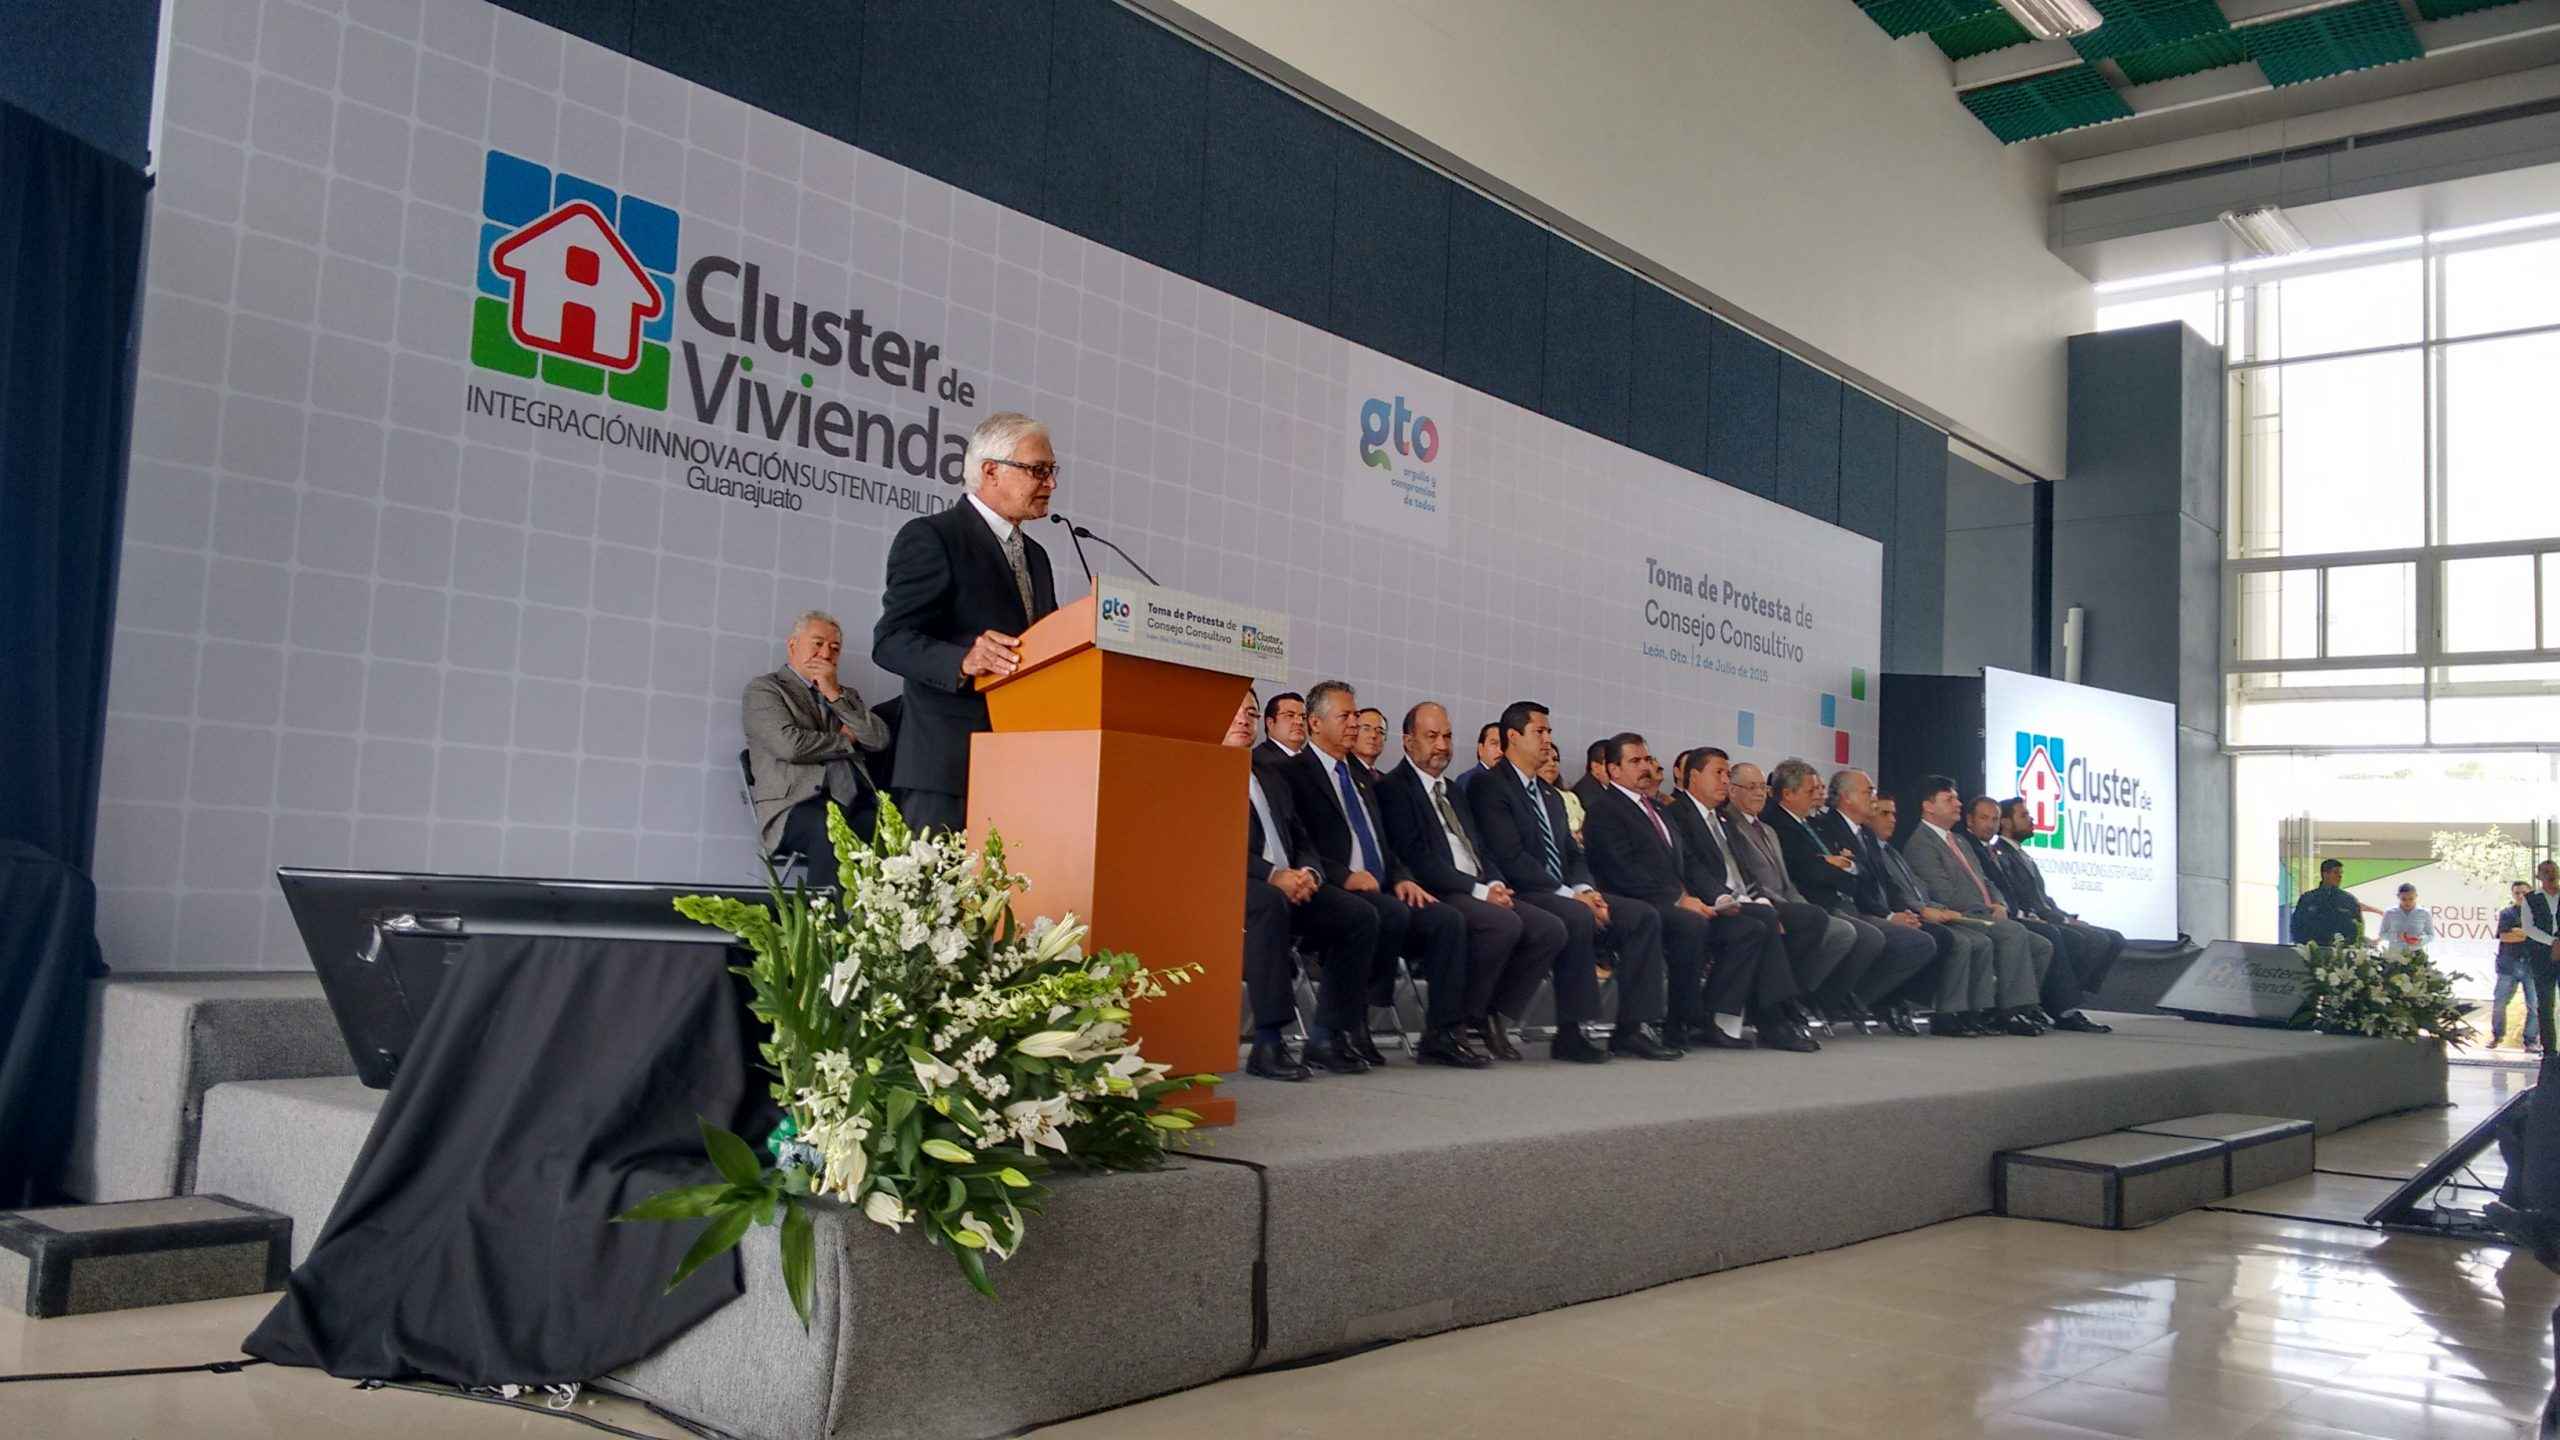 Cluster de Vivienda de Guanajuato fortalece al sector - Cluster de Vivienda1 CentroUrbano scaled